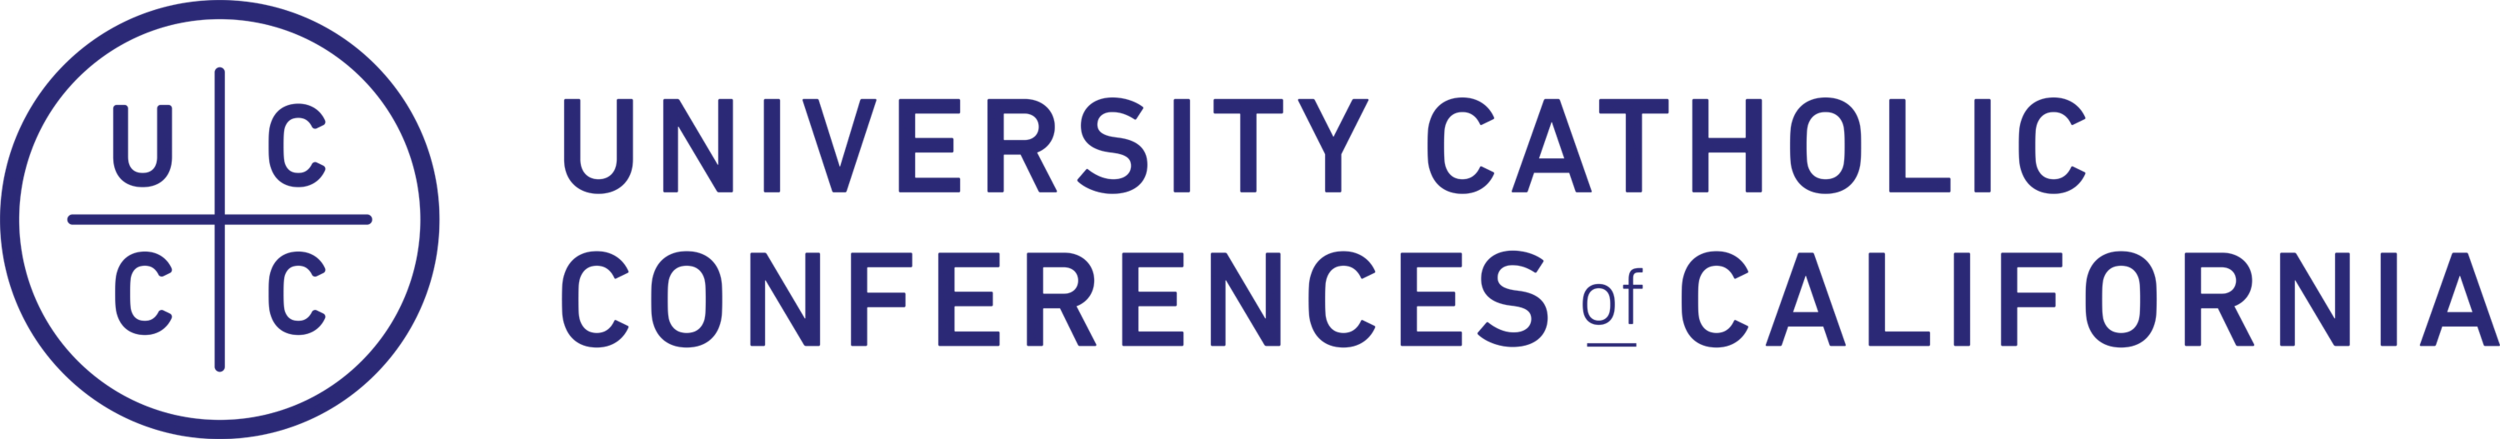 University Catholic Conferences of California